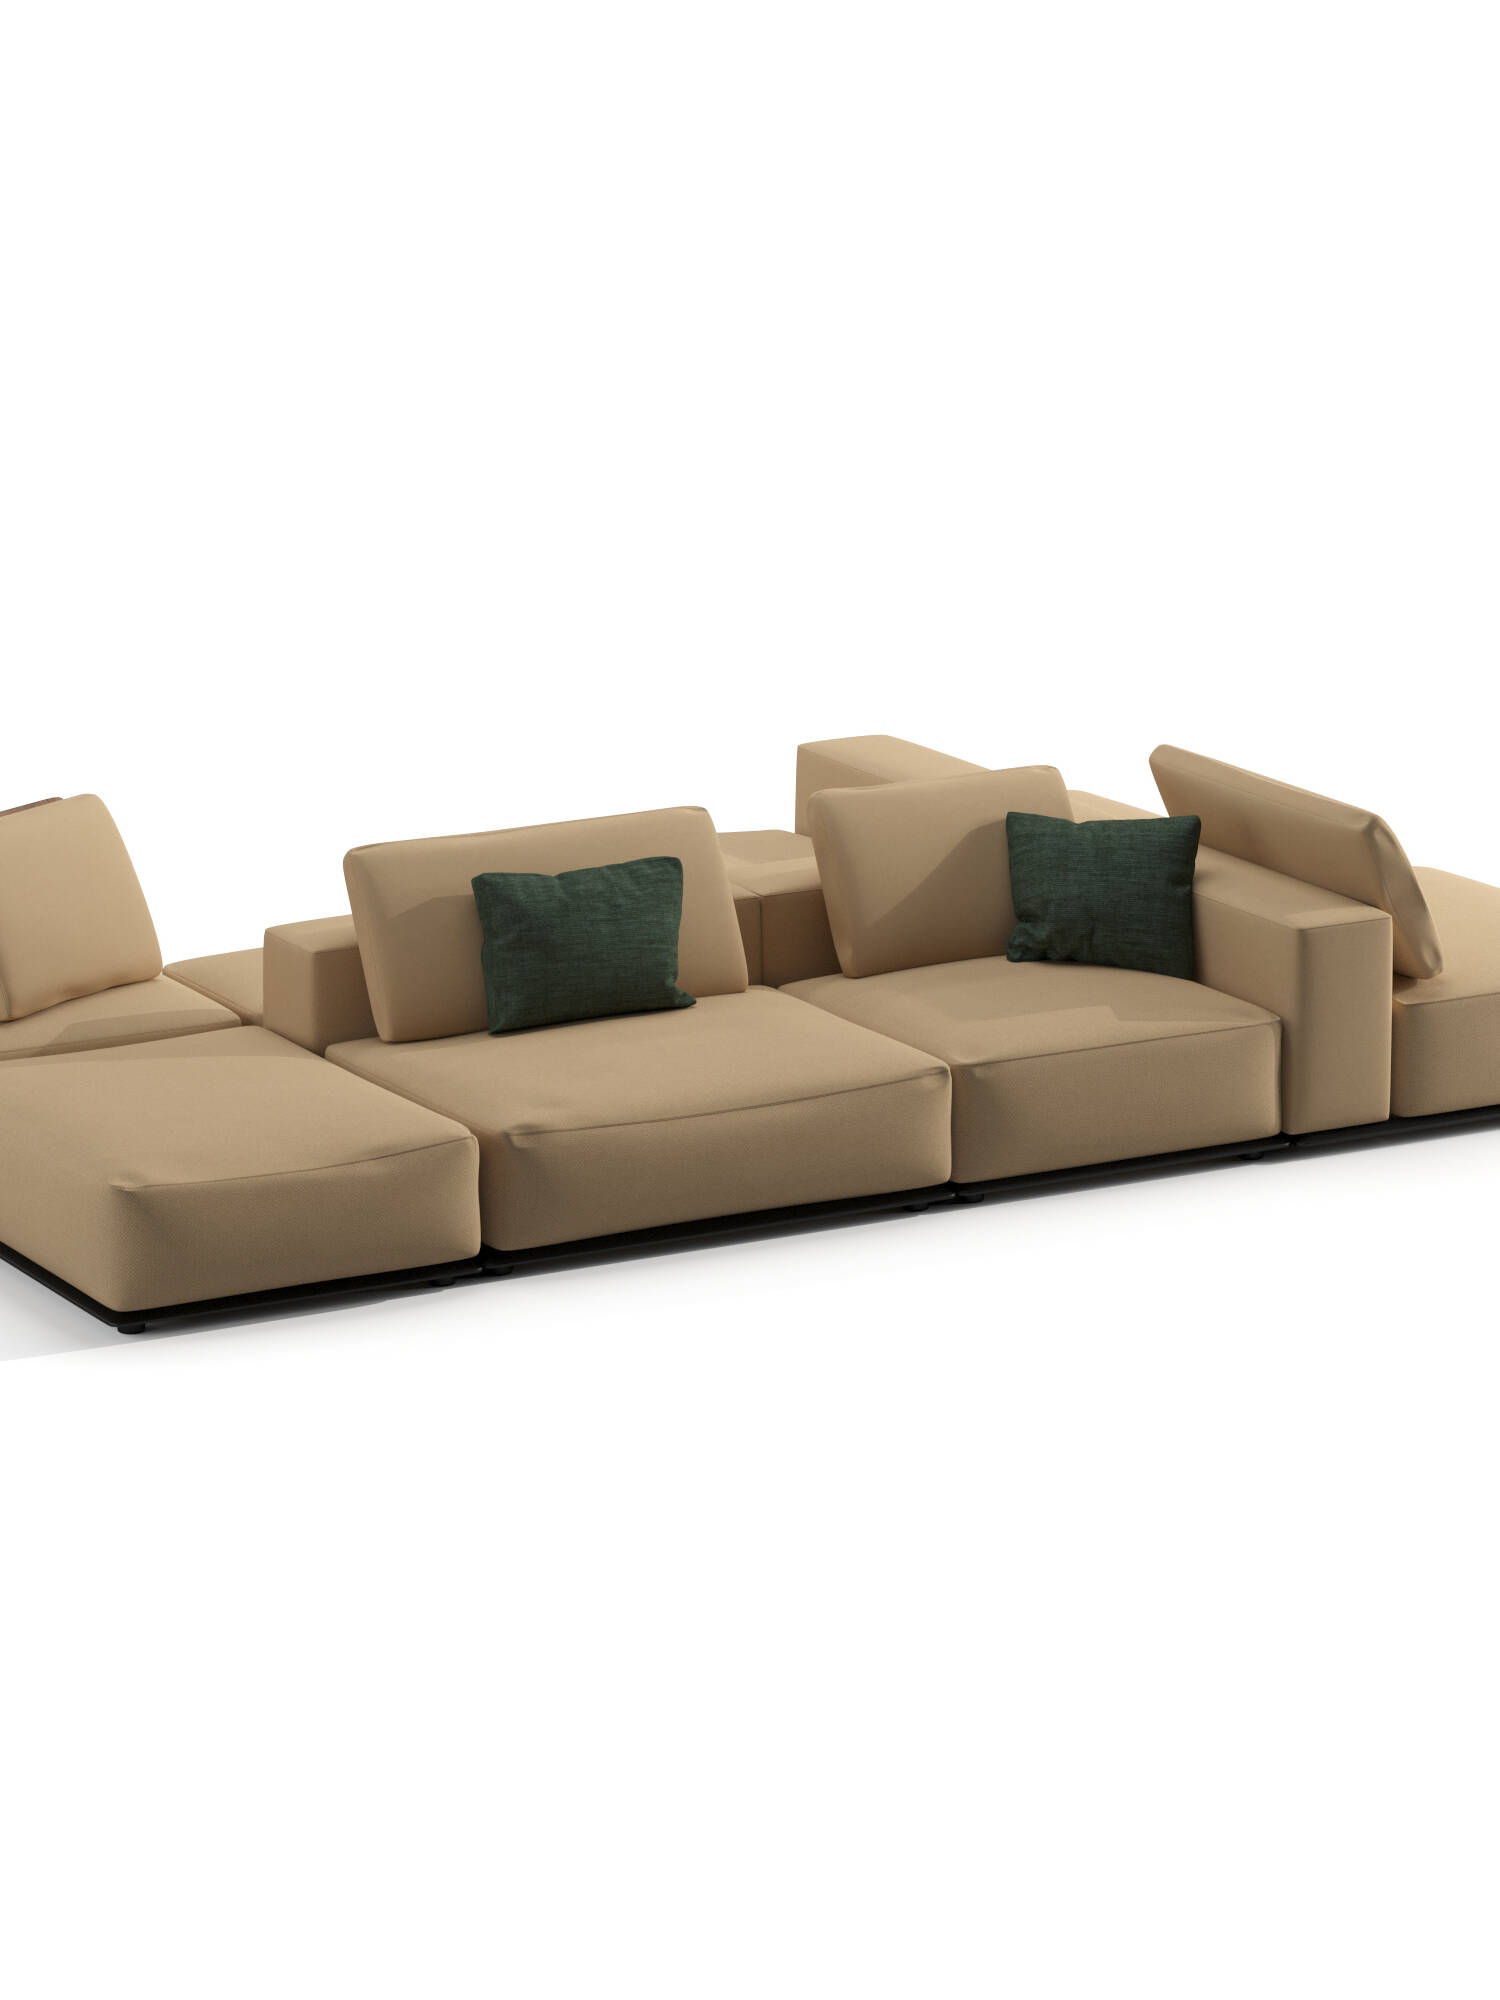 Poliform Westside Sofa 3d Model